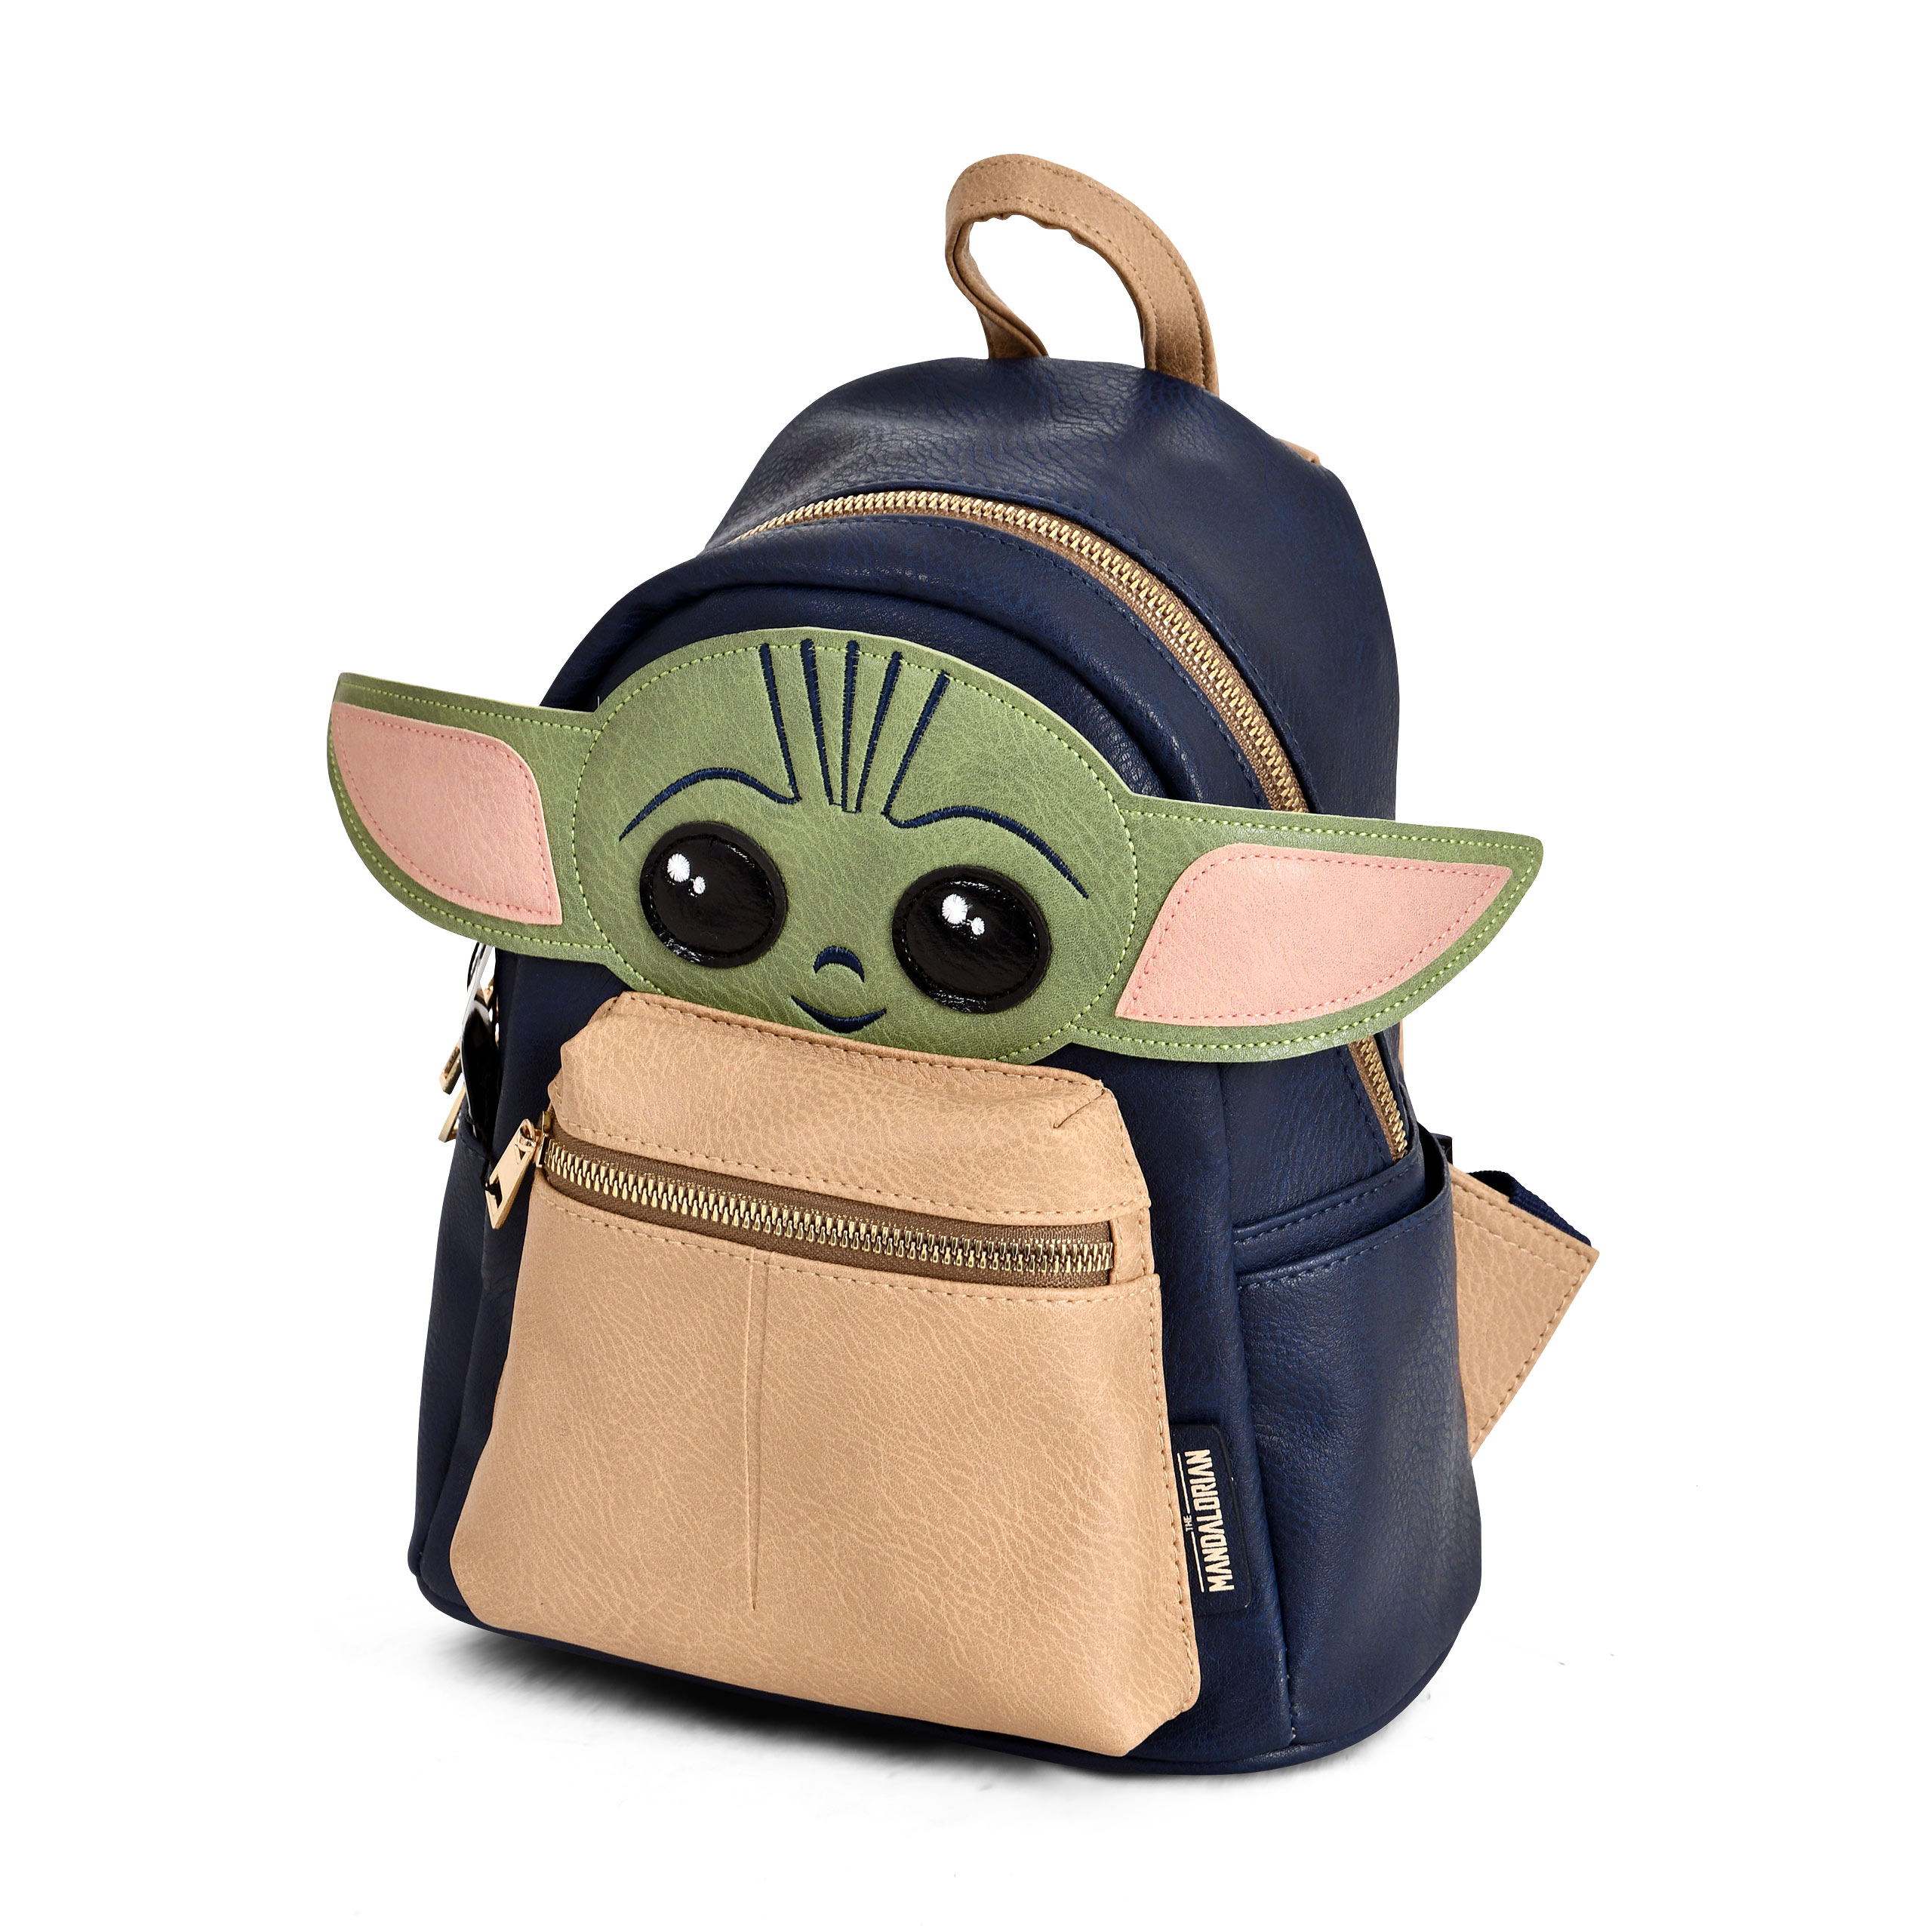 Grogu Mini Backpack - Star Wars The Mandalorian